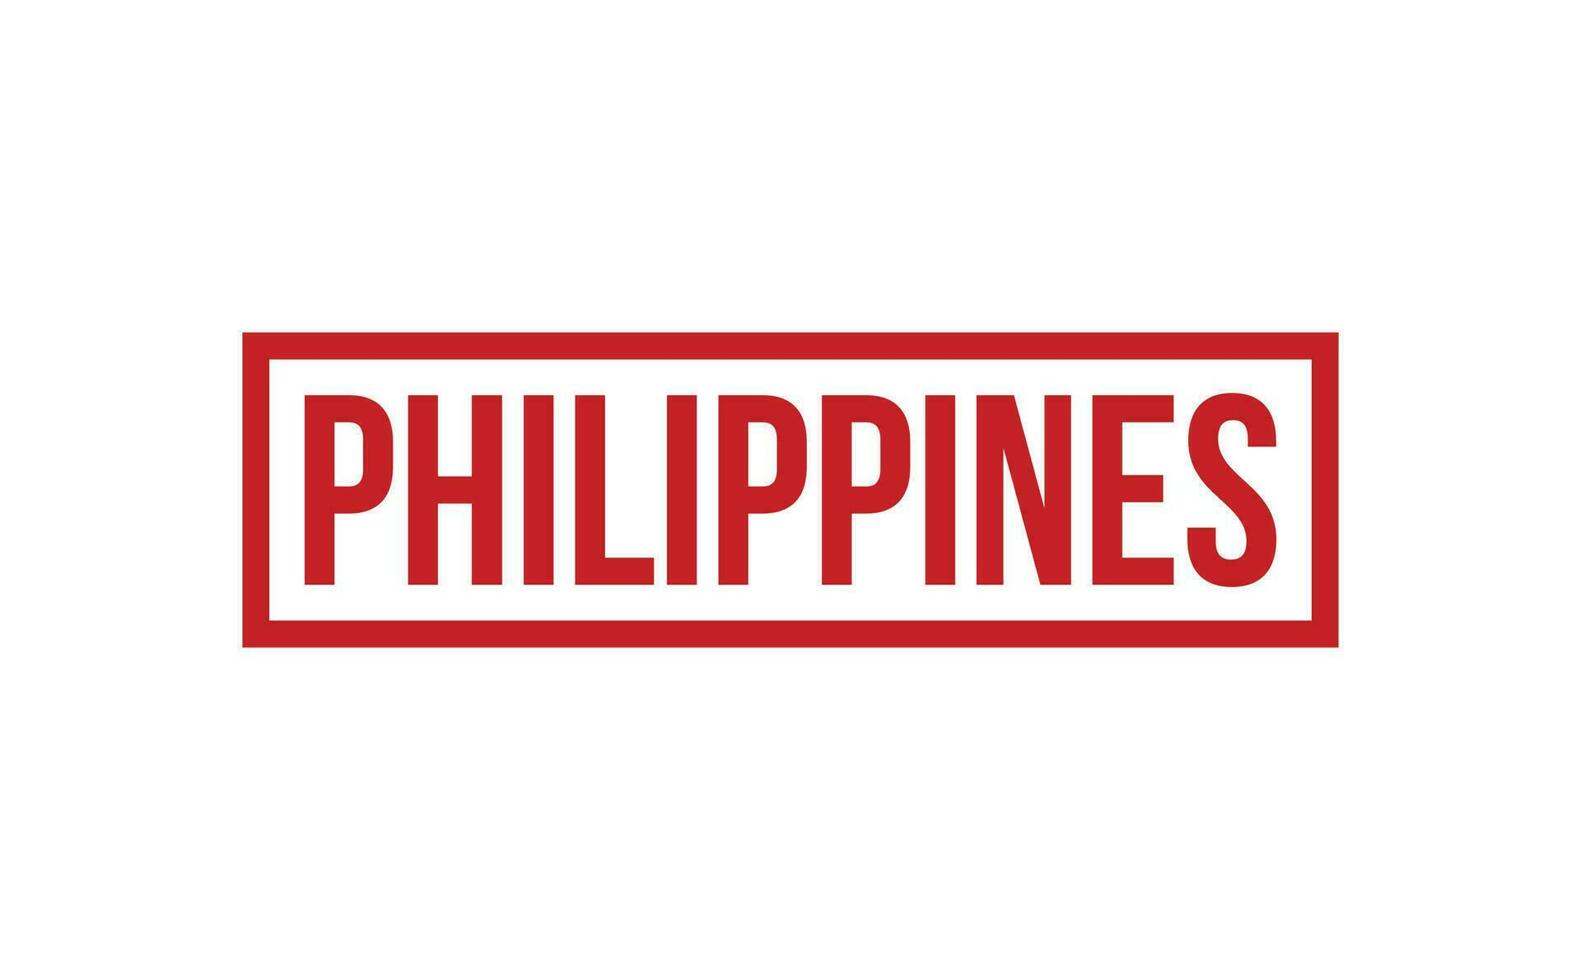 Philippinen Gummi Briefmarke Siegel Vektor